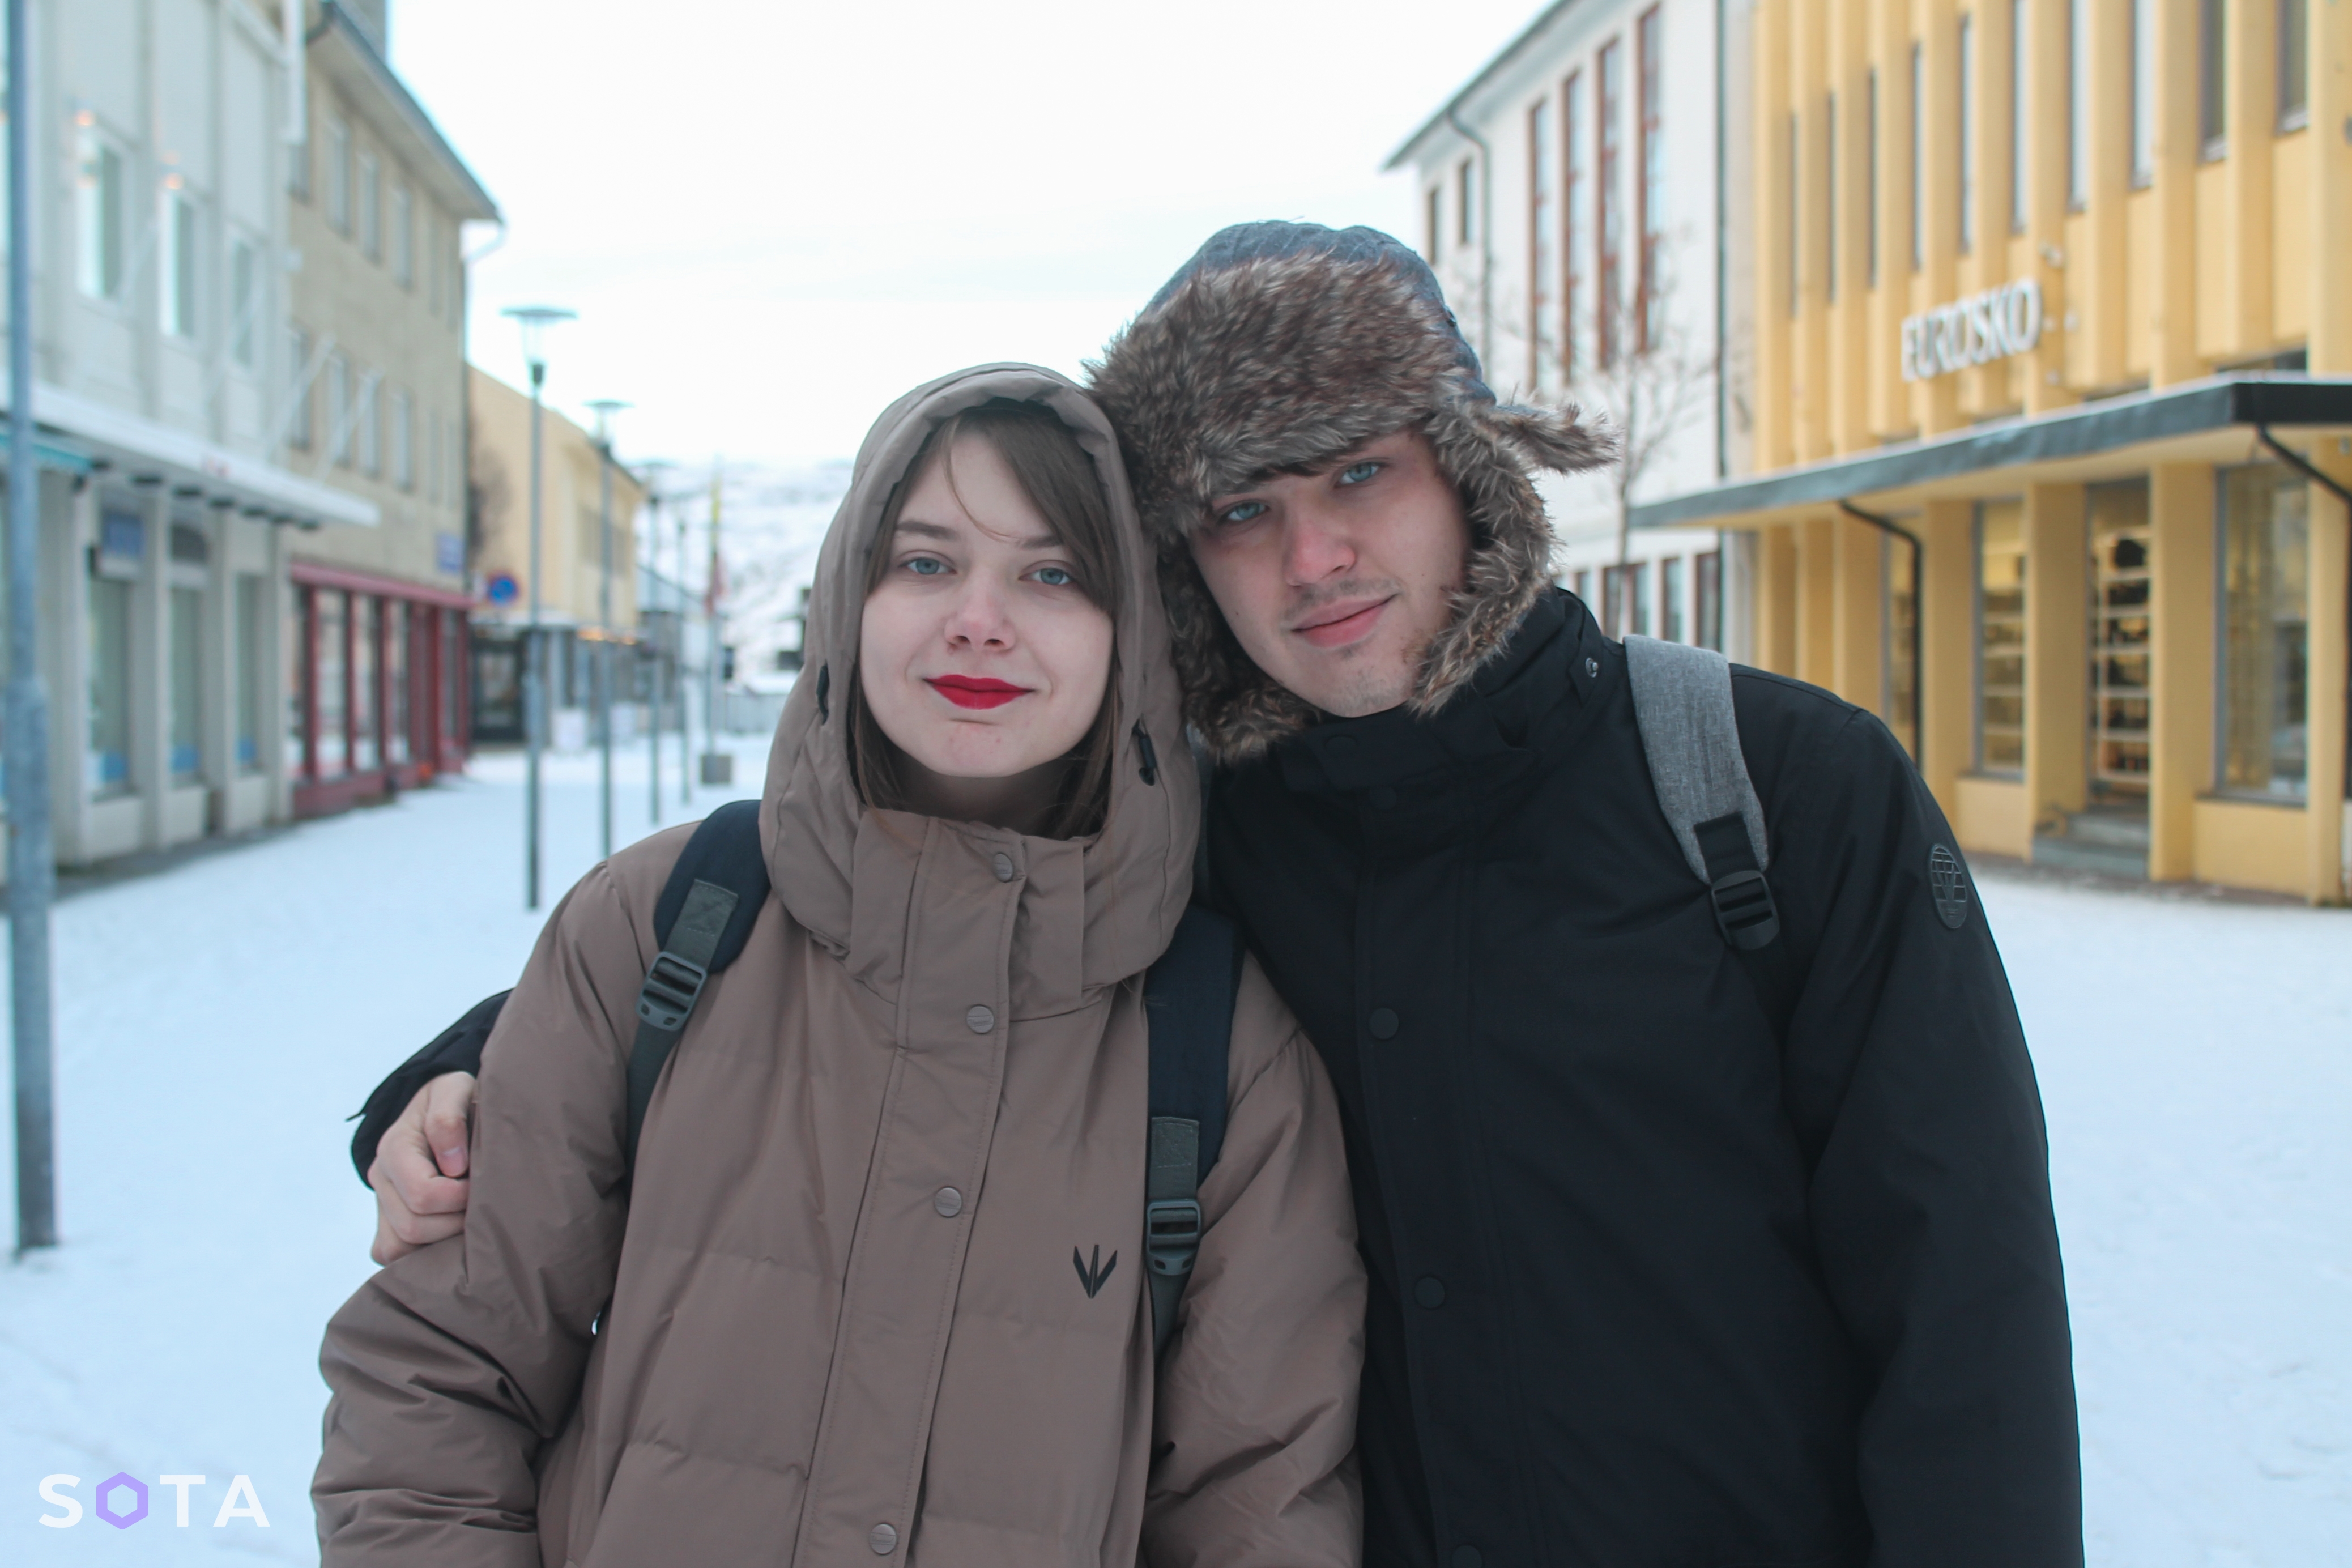 Олеся и Илья
Александр Песков / SOTA